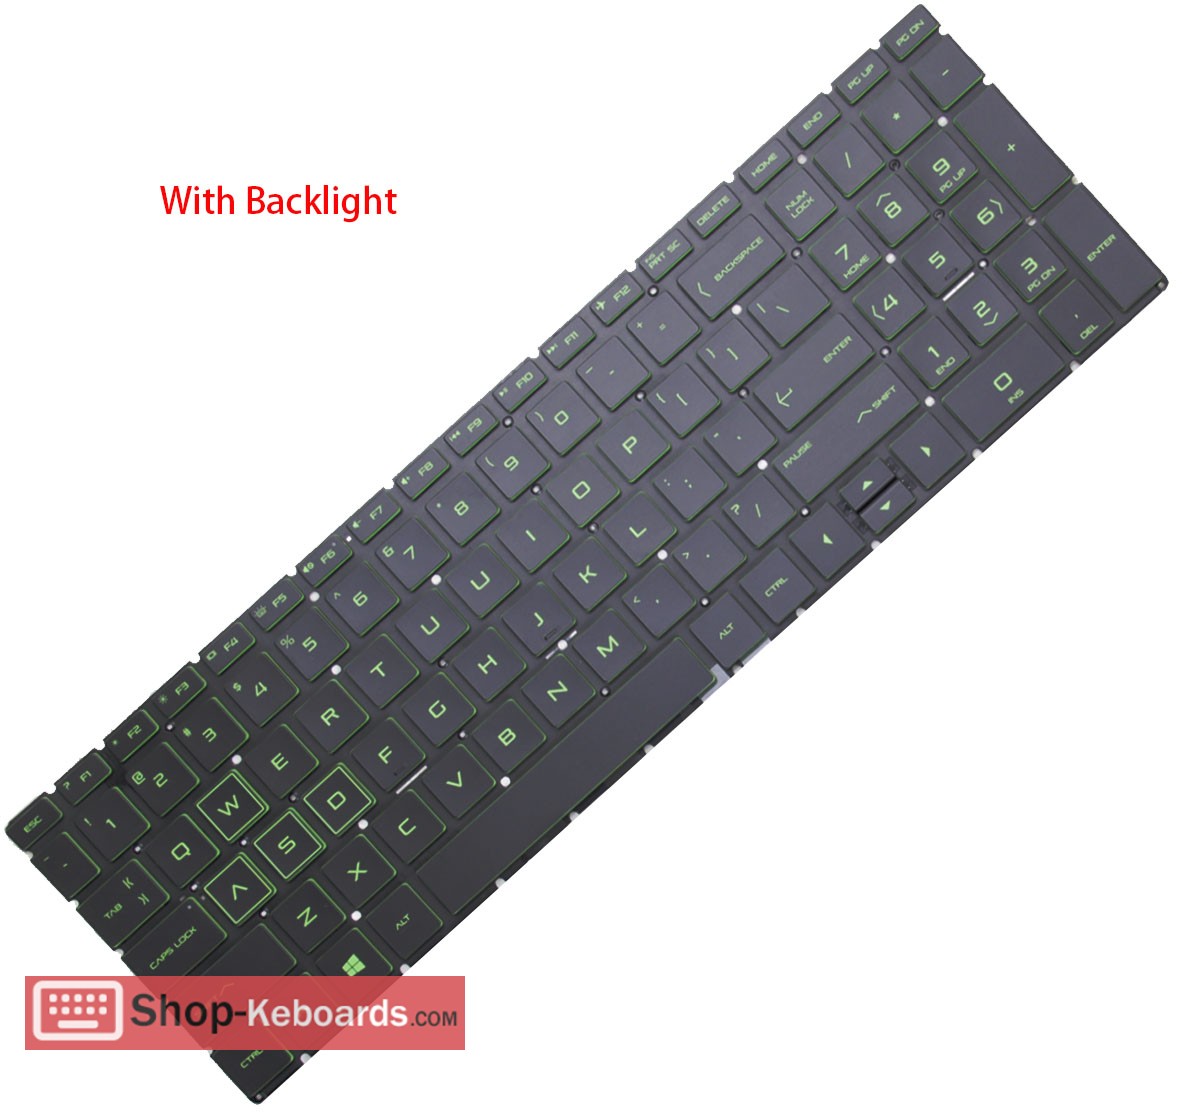 HP PAVILION GAMING 15-DK0127TX  Keyboard replacement